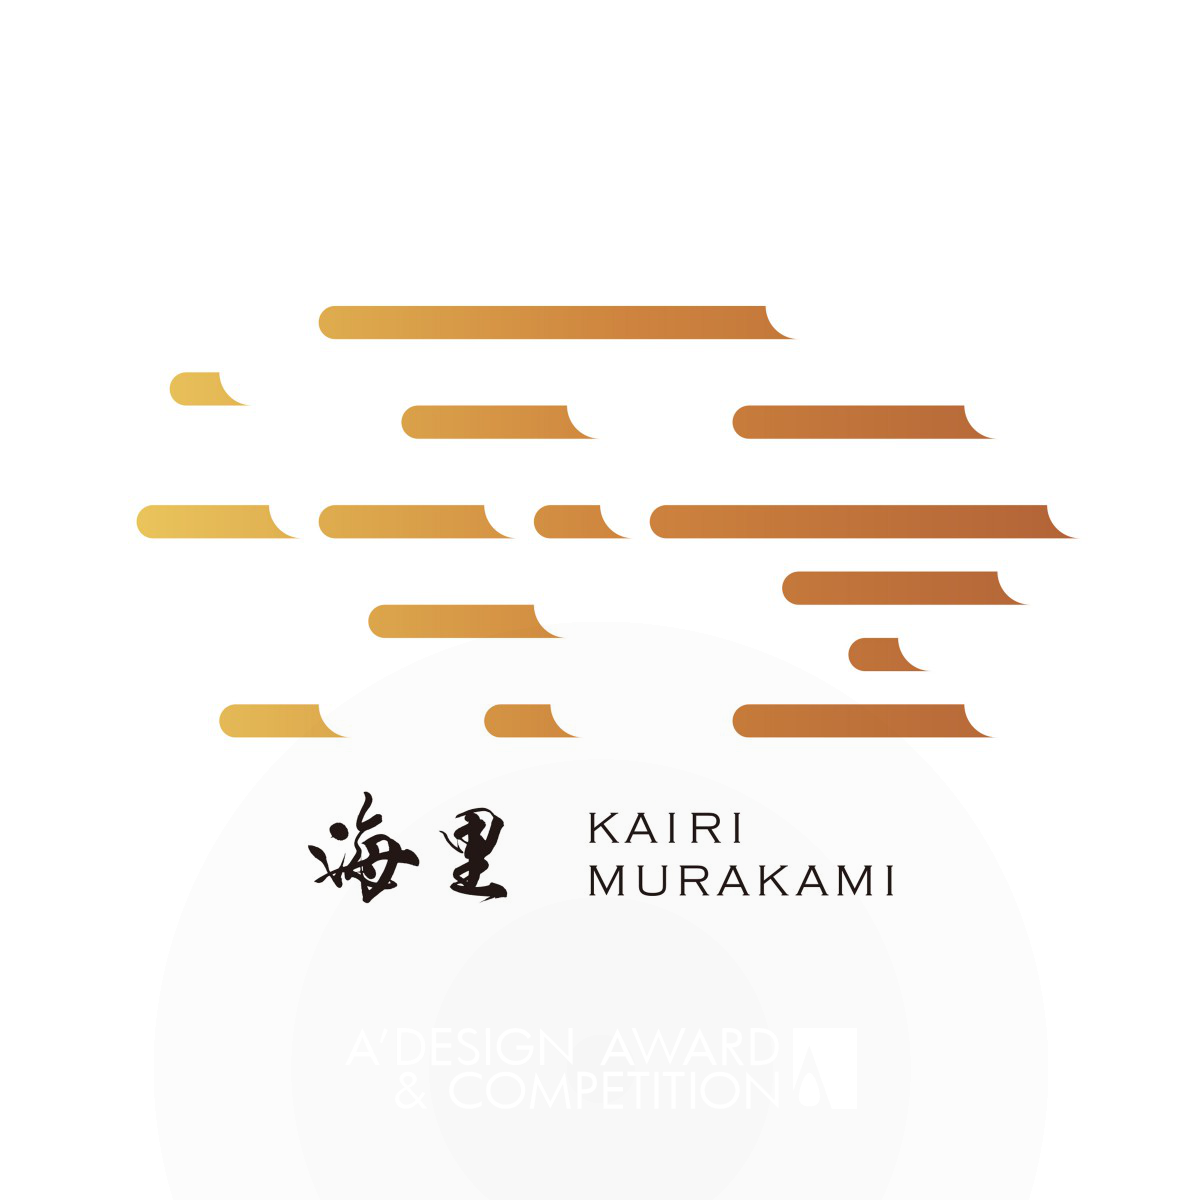 Kairi Murakami Brand Identity Redesign